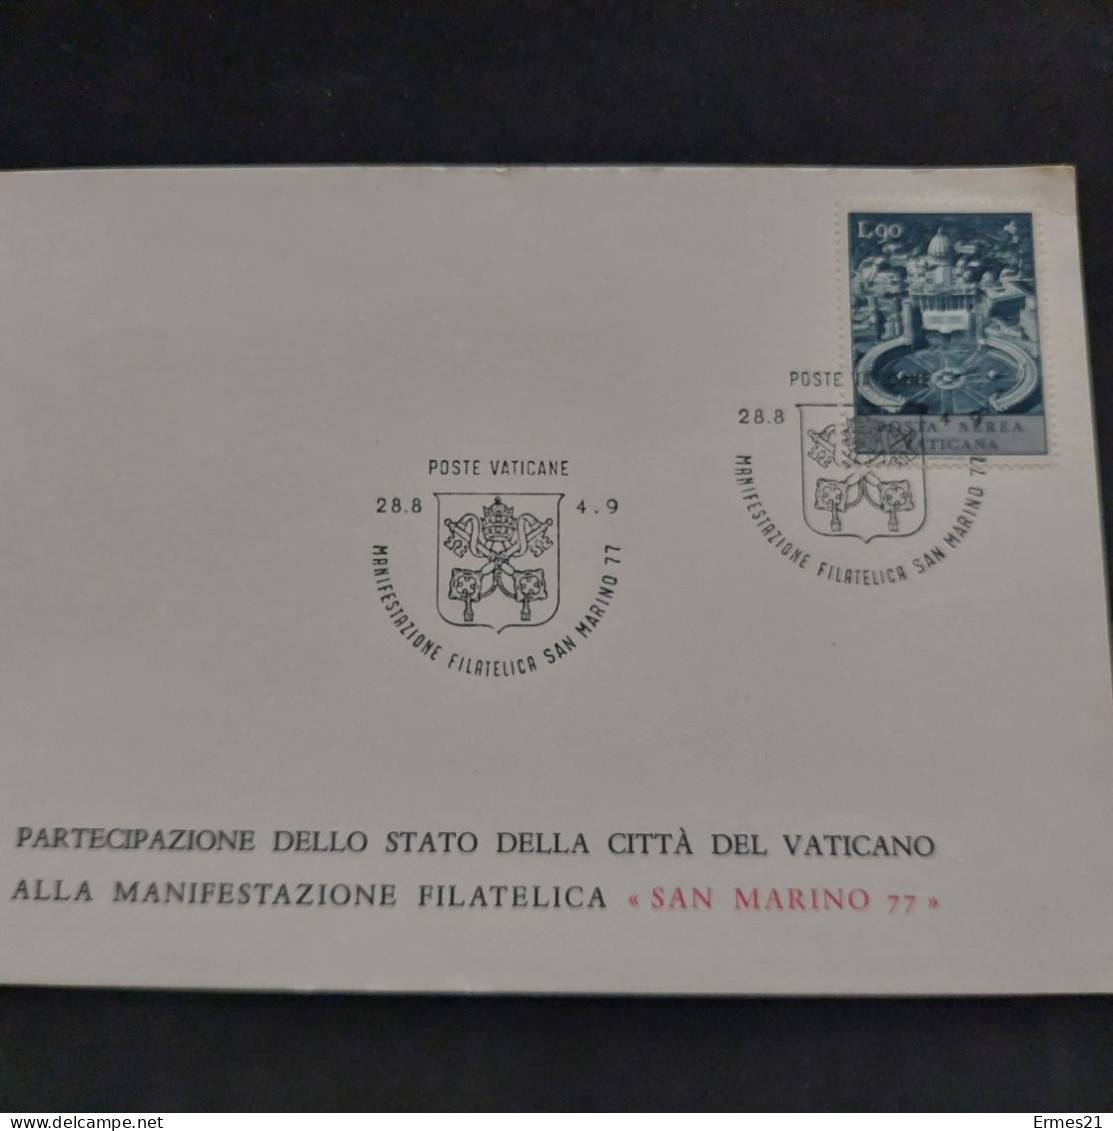 Governatorato  Poste Vaticane 1977. Partecipazione Città Del Vaticano Manifestazione Filatelica "San Marino 77". Nuove. - Errors & Oddities